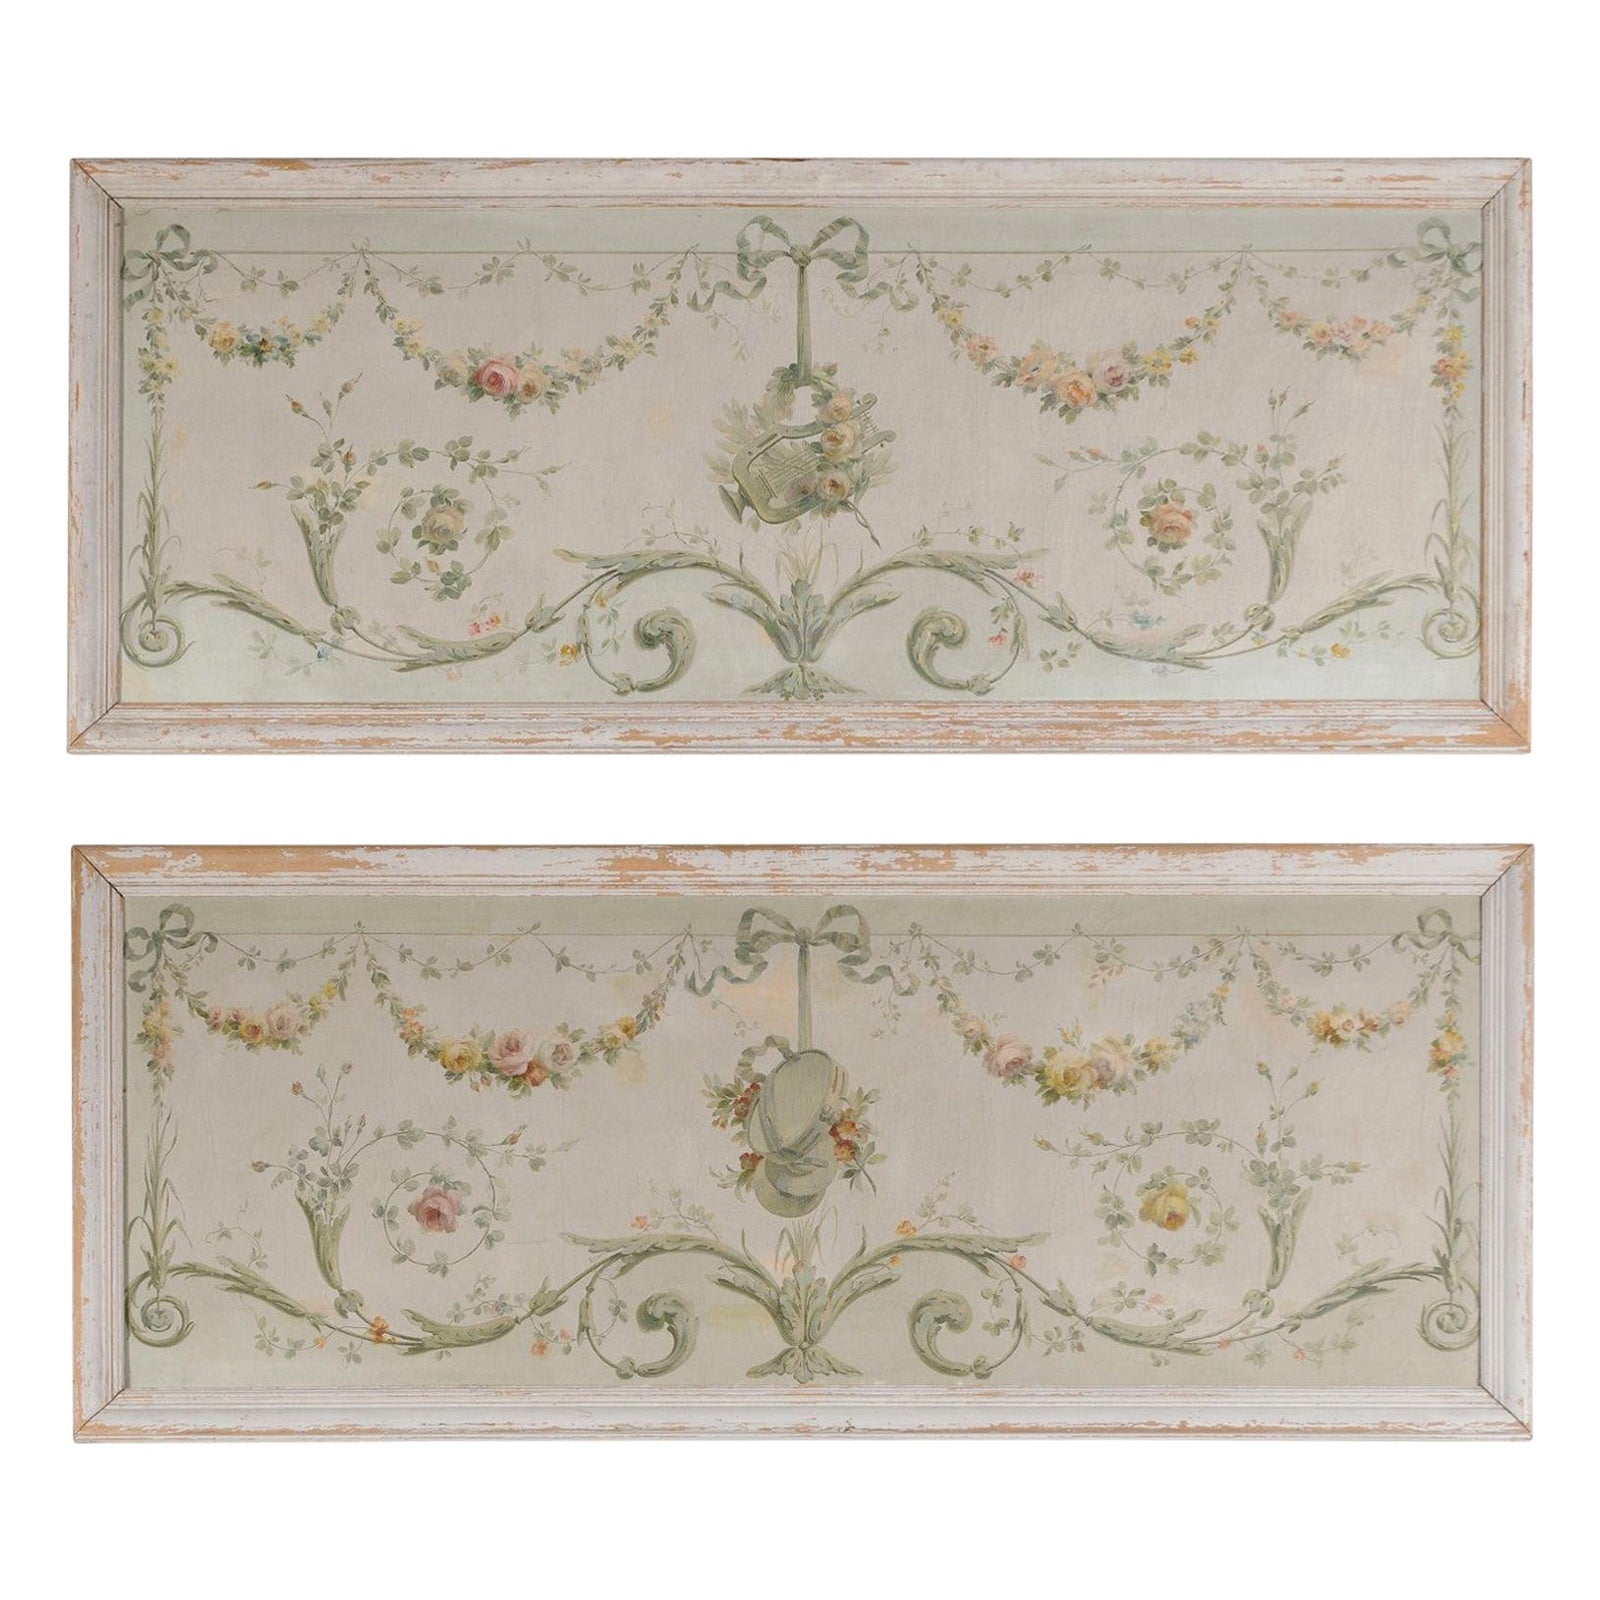 Paire d'huiles sur toile à décor de guirlandes florales, datant des années 1860, pour portes d'entrée.